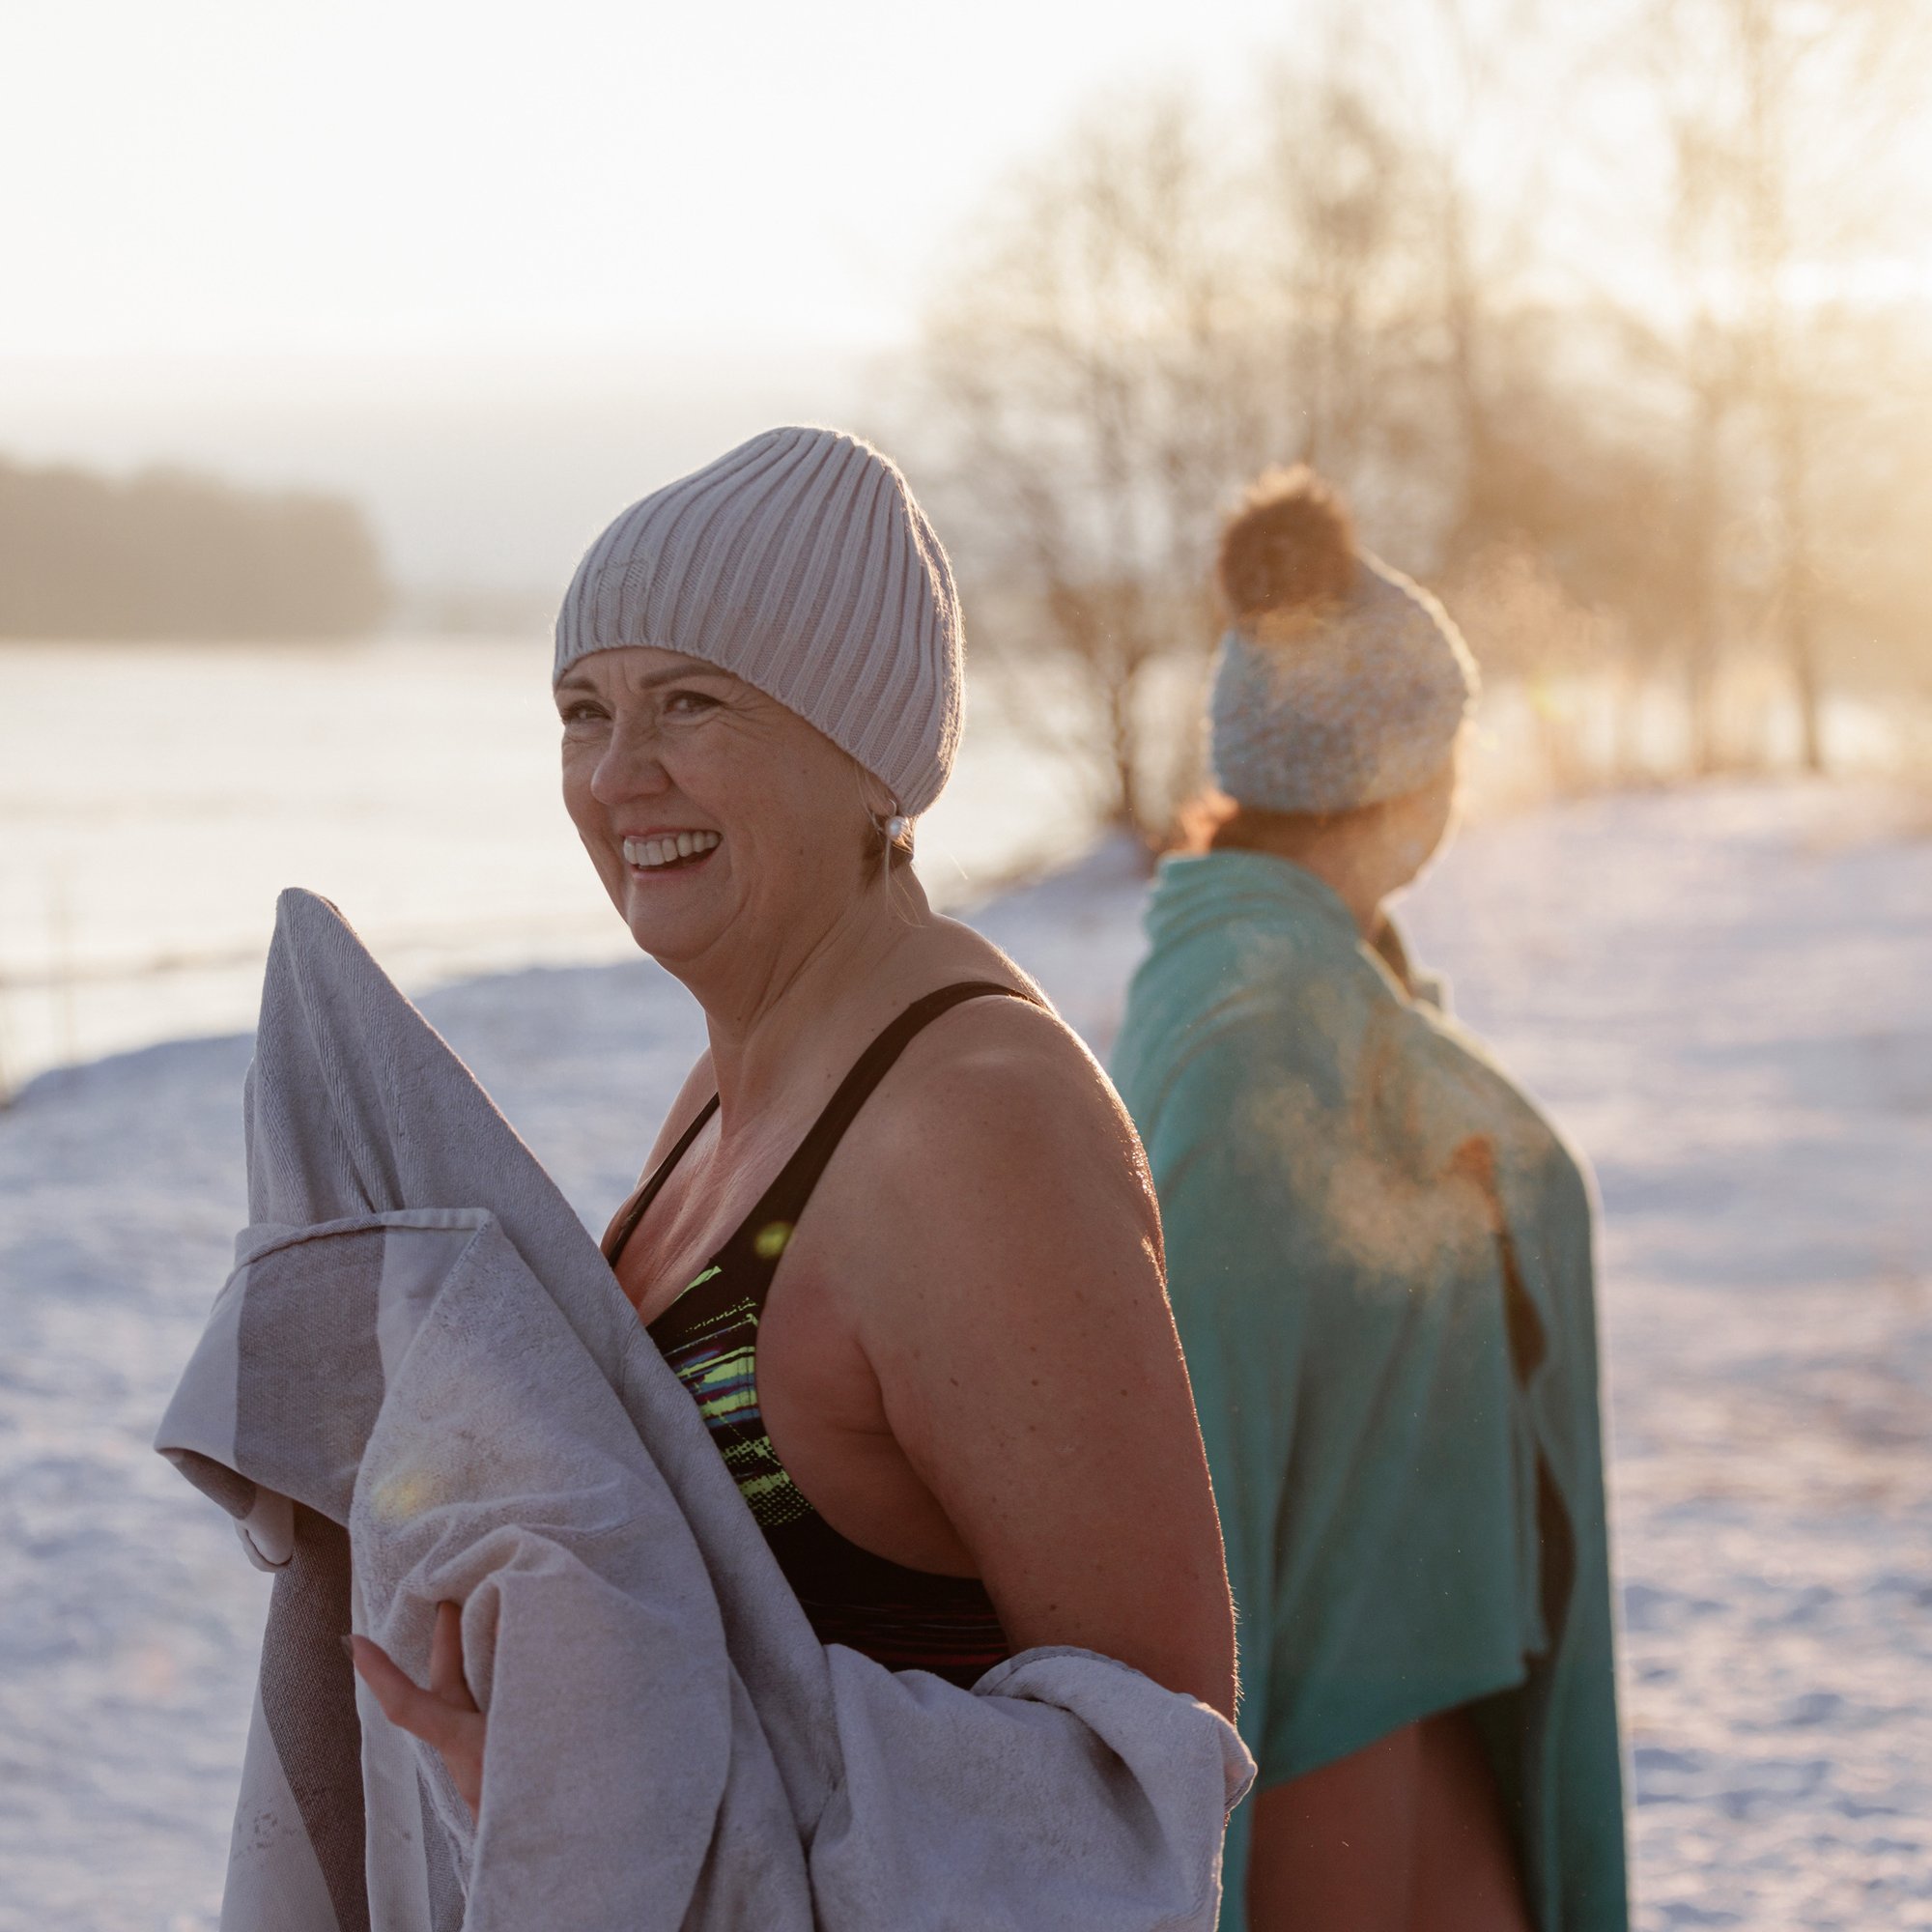 women in swimsuits in a winter landscape.